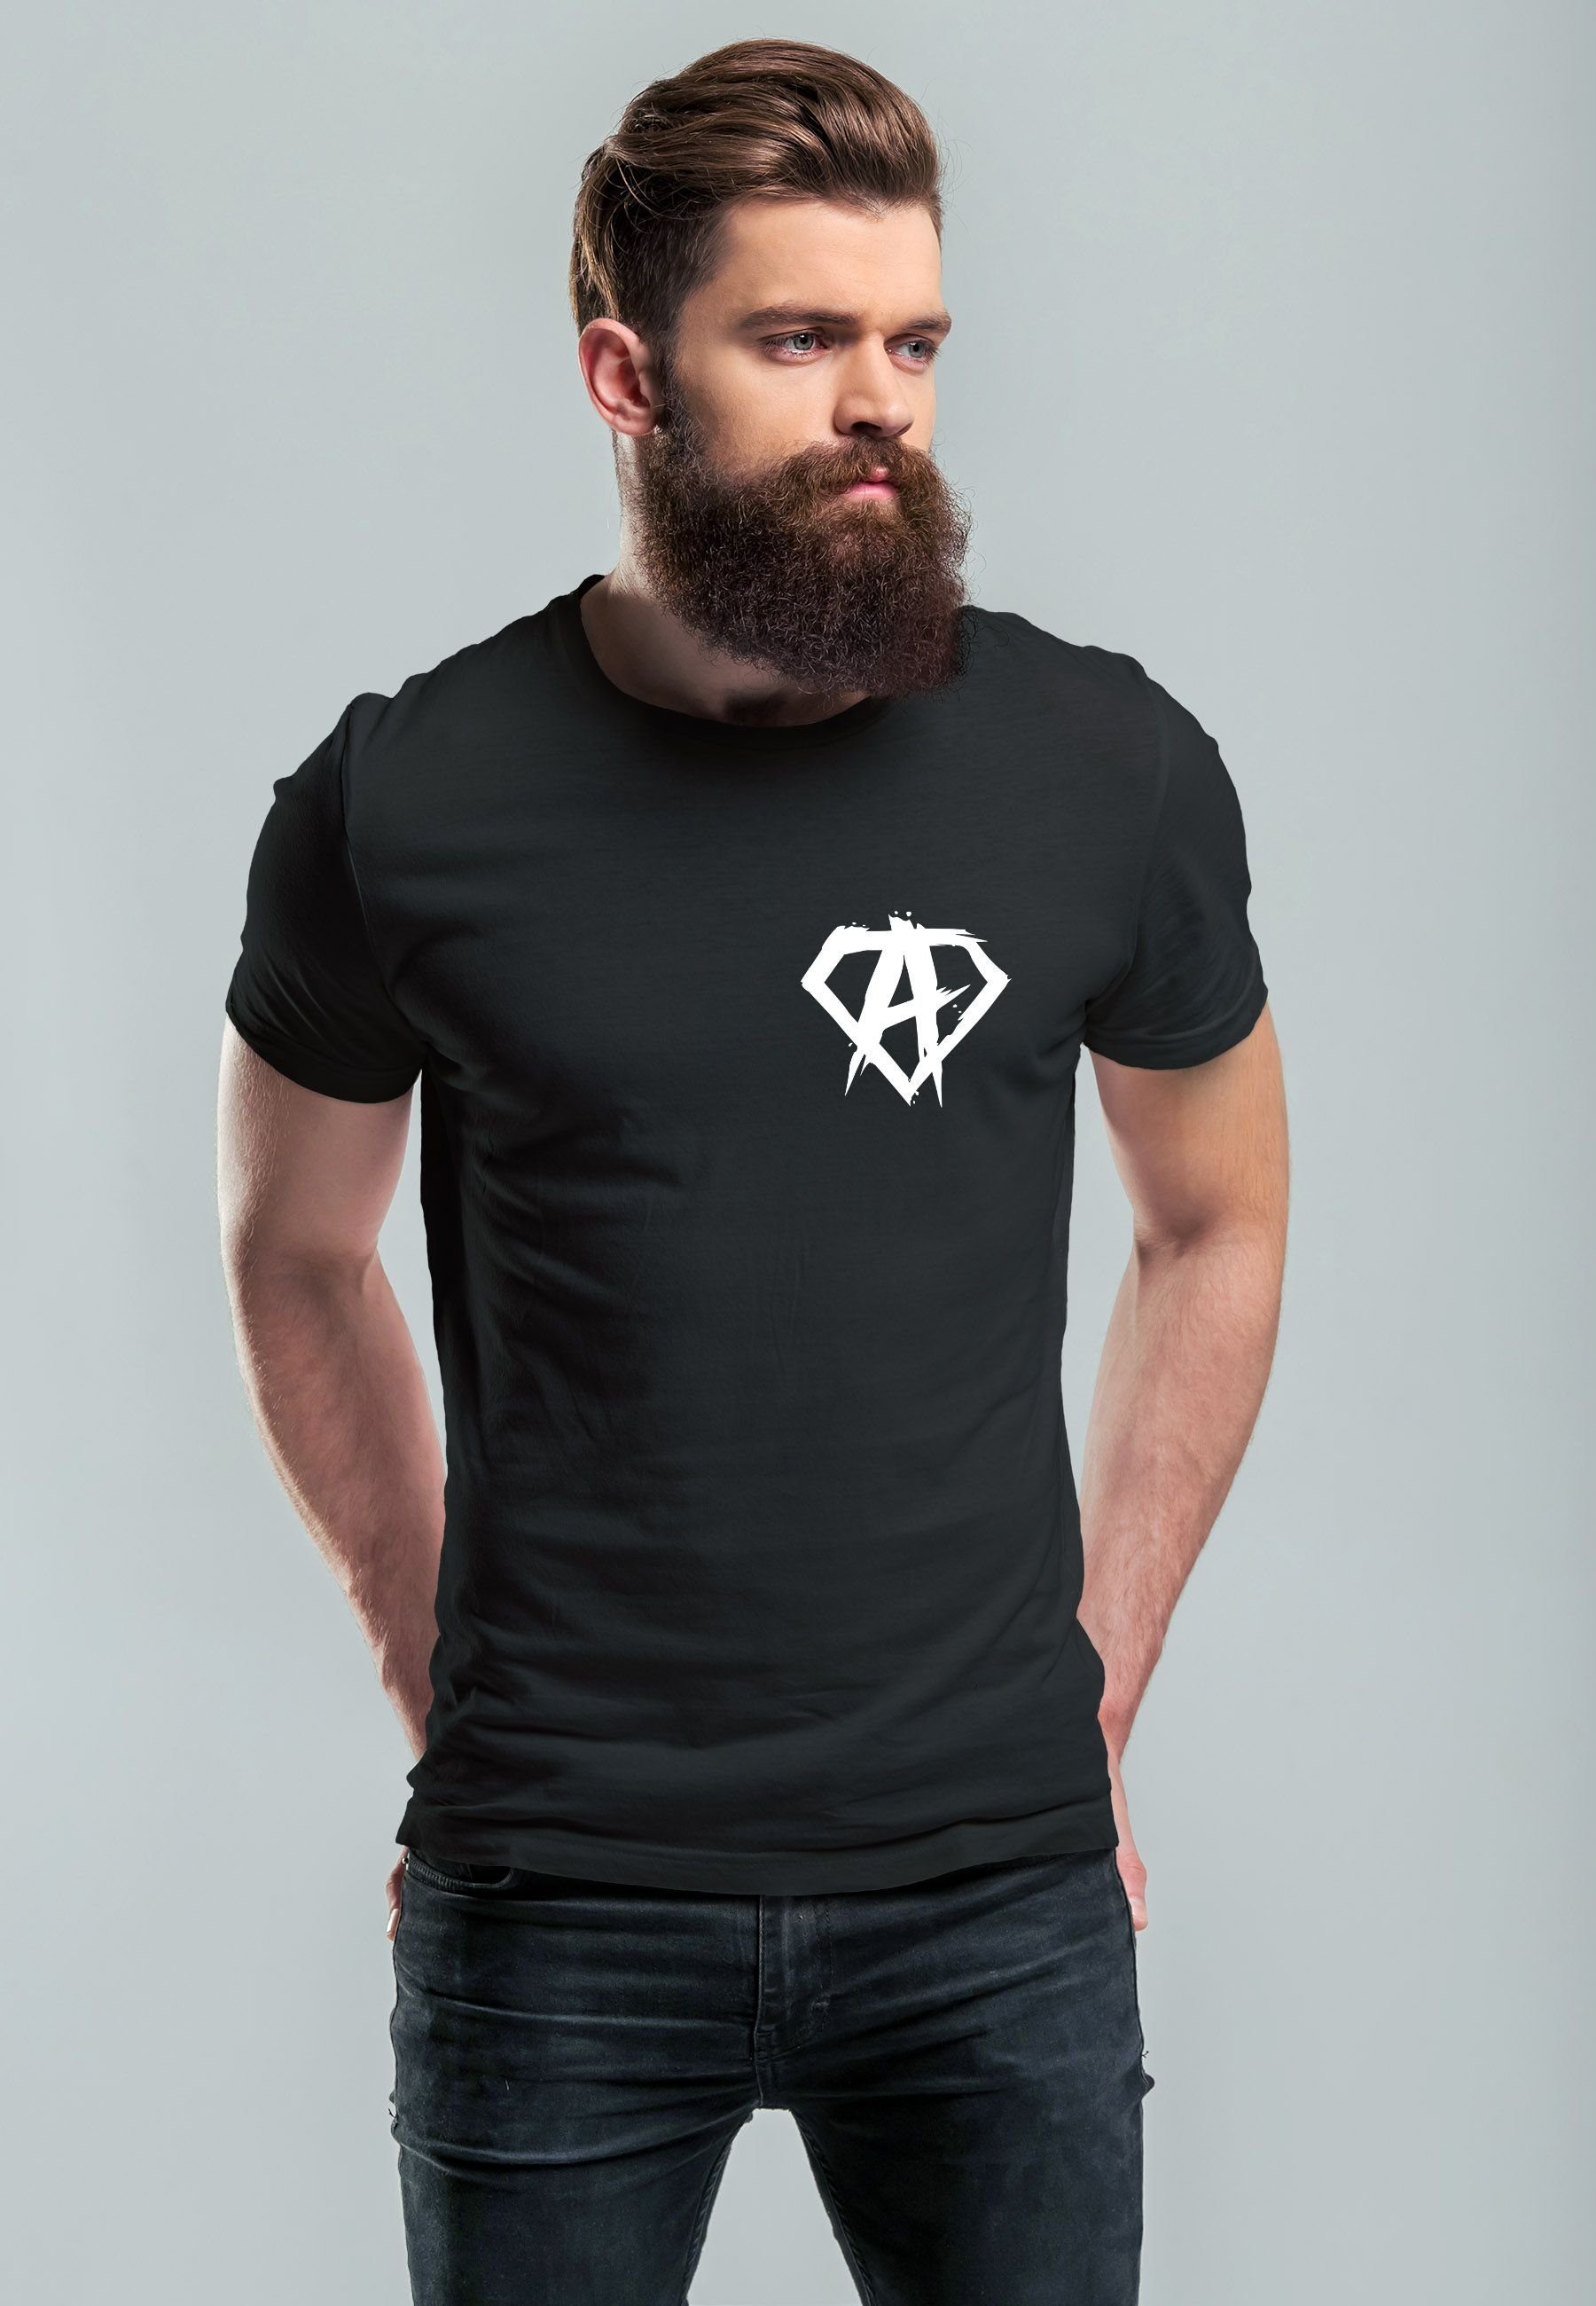 Herren Aufdruck Badge Print Print-Shirt Alpha mit Logo Superhero Anarchy Gym Neverless schwarz Print T-Shirt F